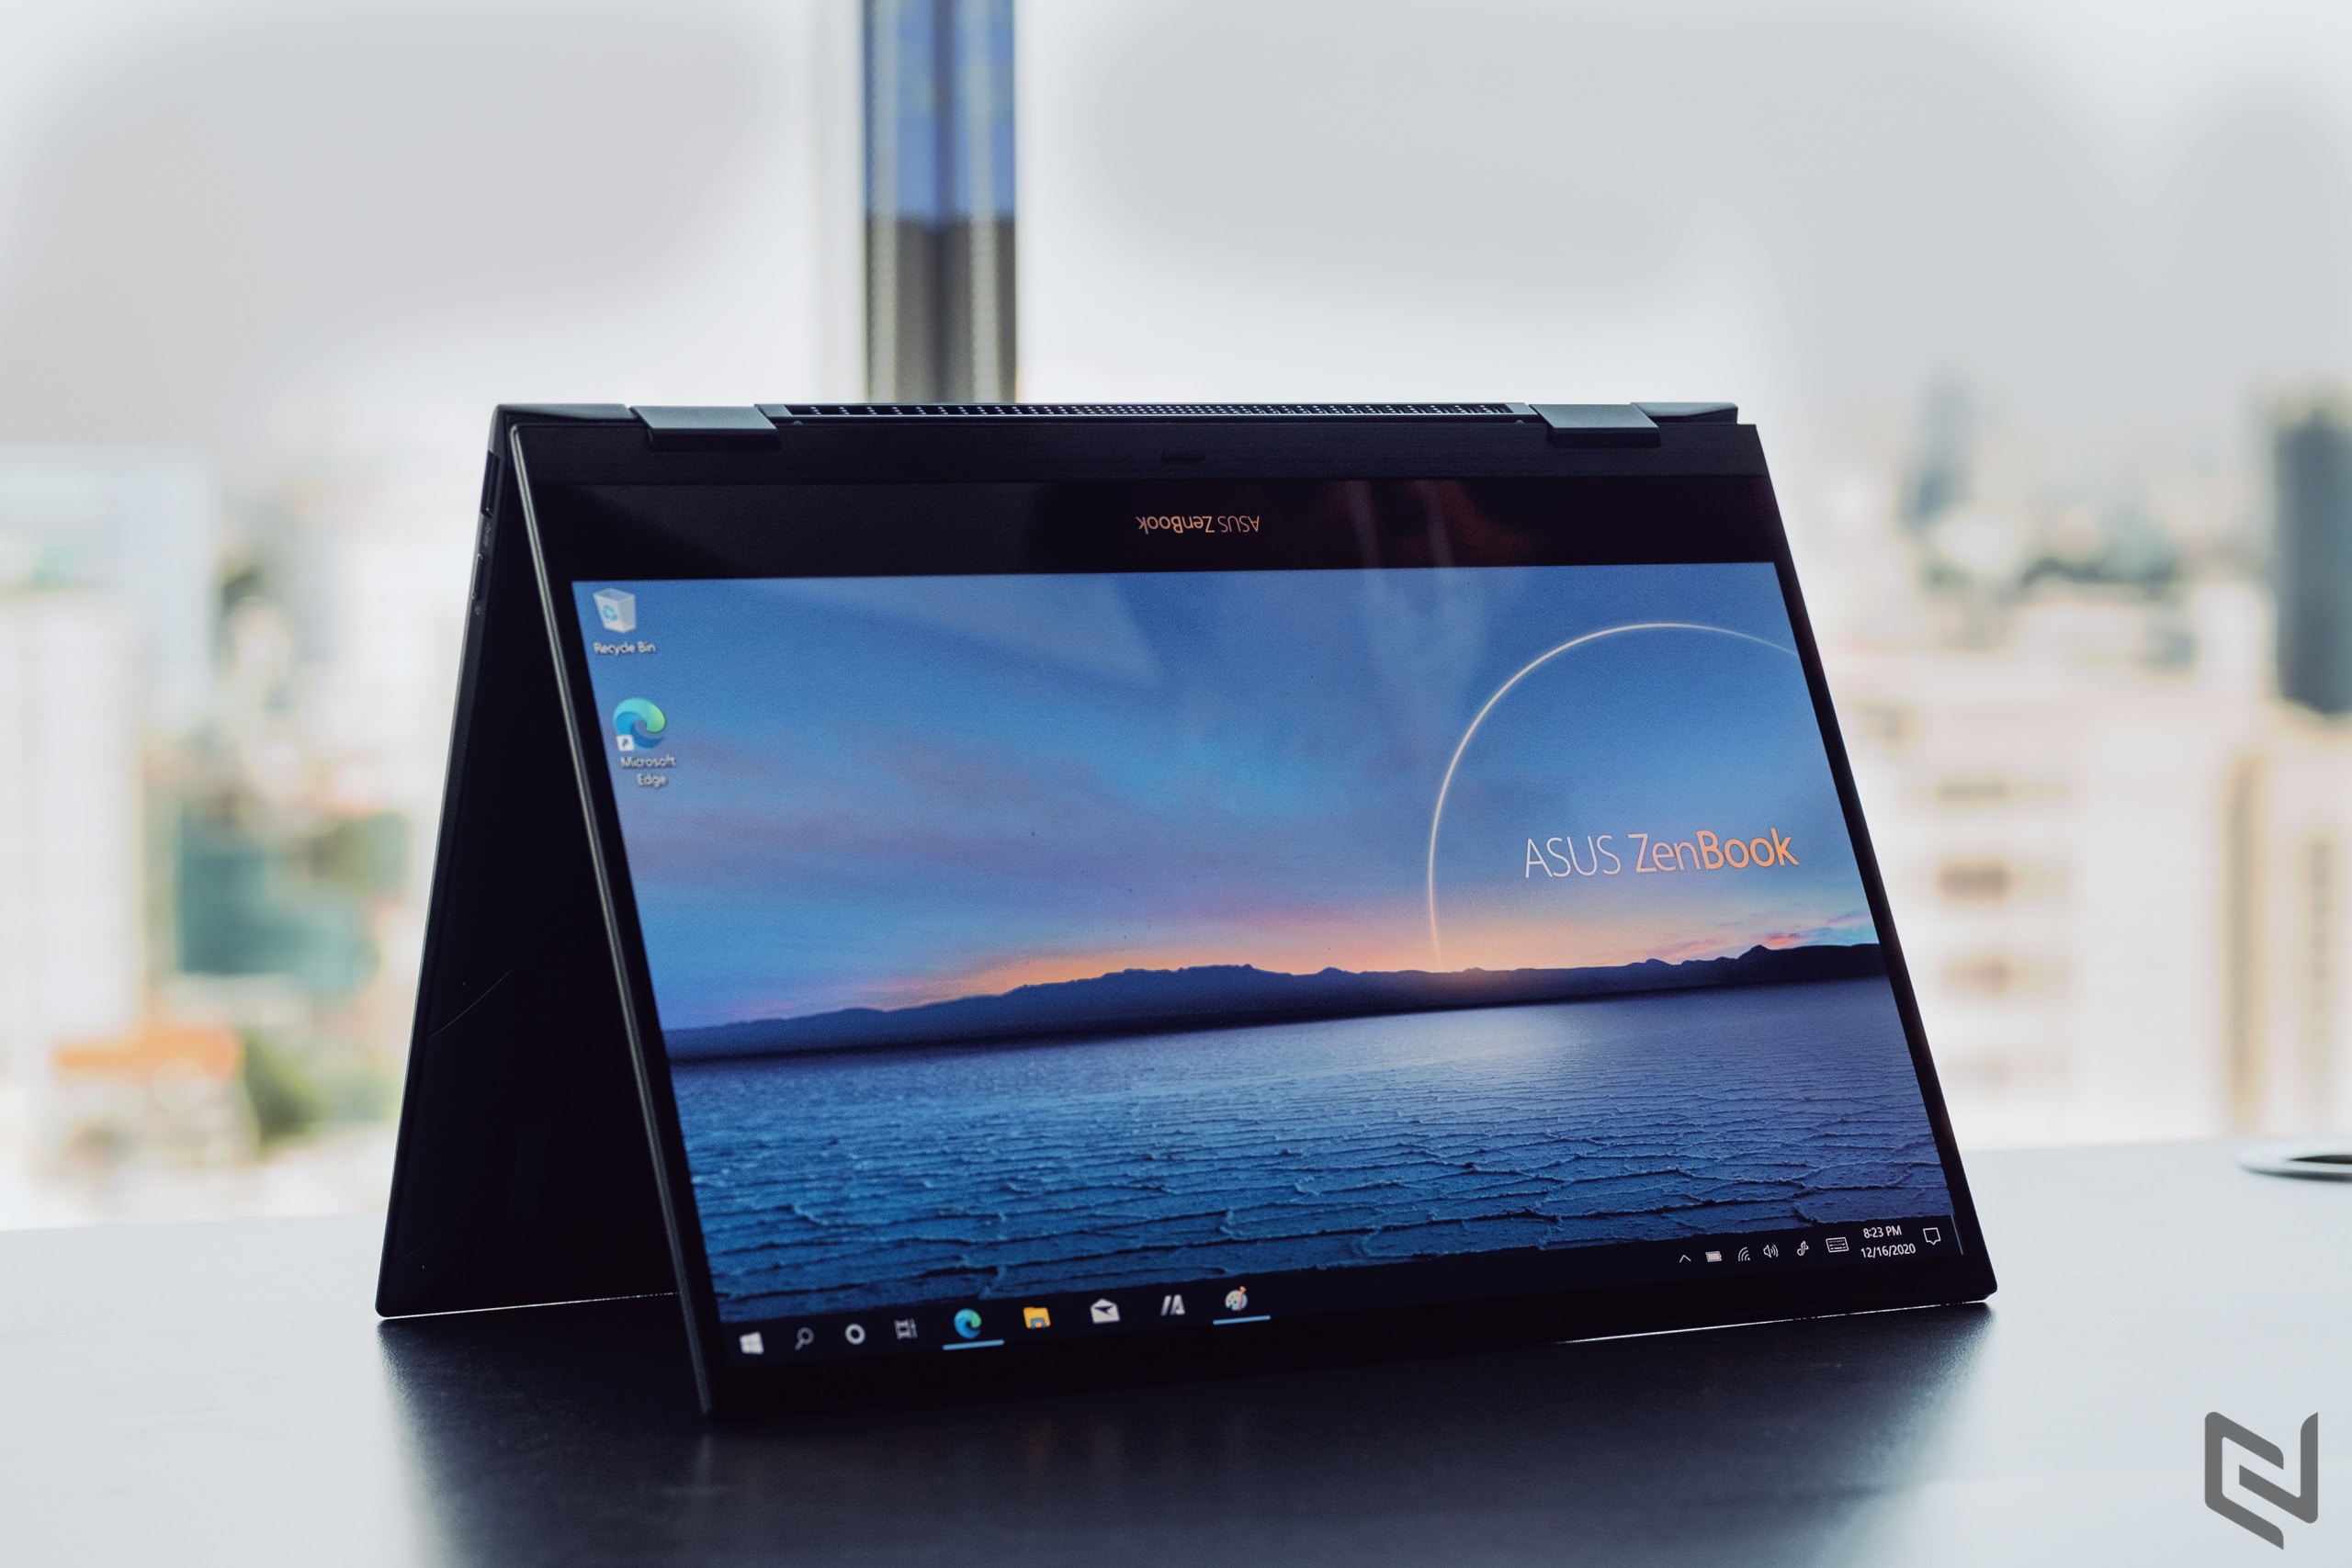 Ra mắt ASUS ZenBook Flip Series, laptop xoay gập tiên phong trang bị màn hình OLED mỏng nhất thế giới